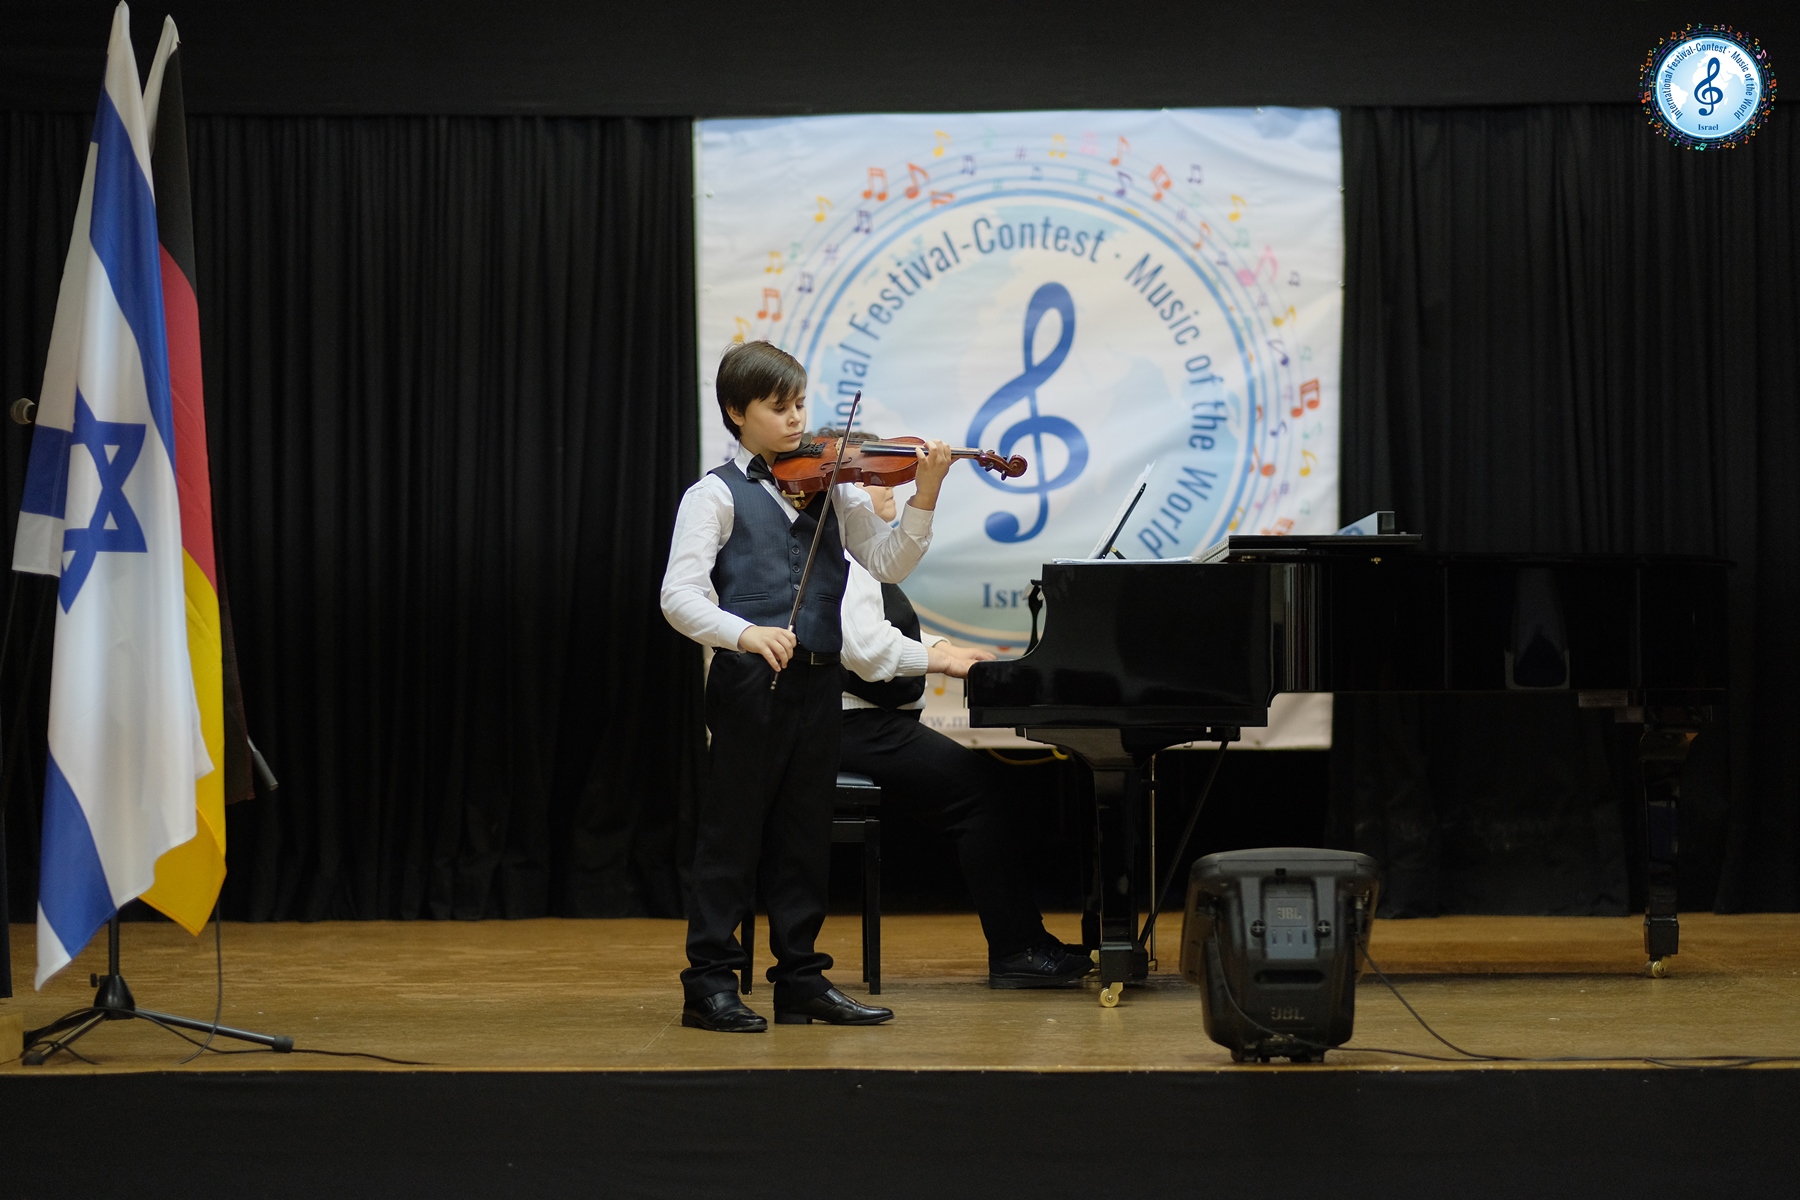 ולדימיר פופוב, תלמיד מרכז המוסיקה העירוני זכה במקום השני בתחרות מוסיקה בינלאומית